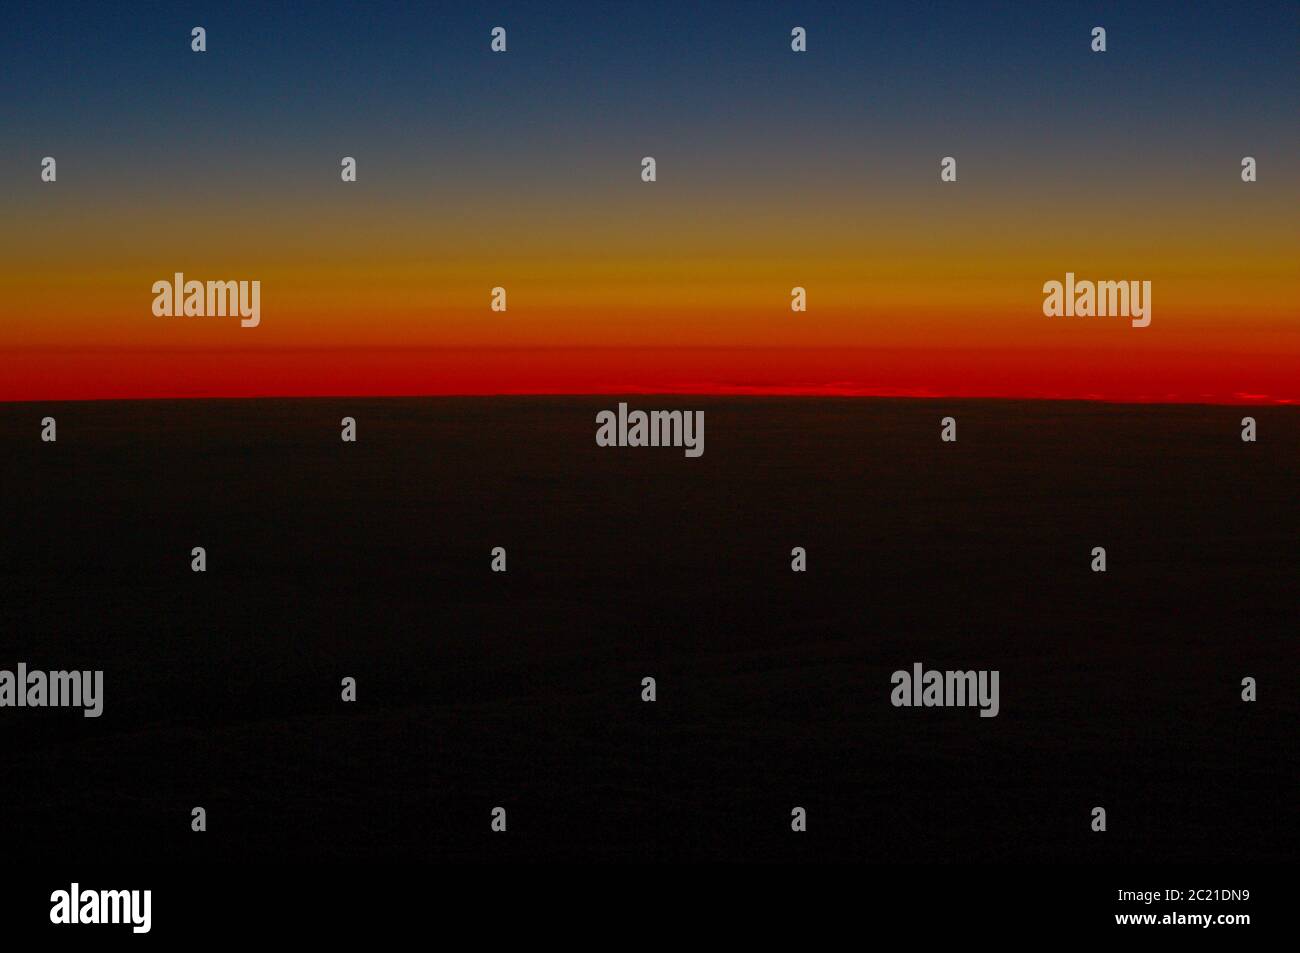 Bildfolge des gleichen Sonnenuntergangs gleicher Aussichtspunkt,Sonnenuntergang über dem Meer,Regenbogenuntergang über dem Meer,Regenbogen,Karmesin,Sonnenuntergang,Regenbogenspektrum,Sonnenuntergang, Stockfoto